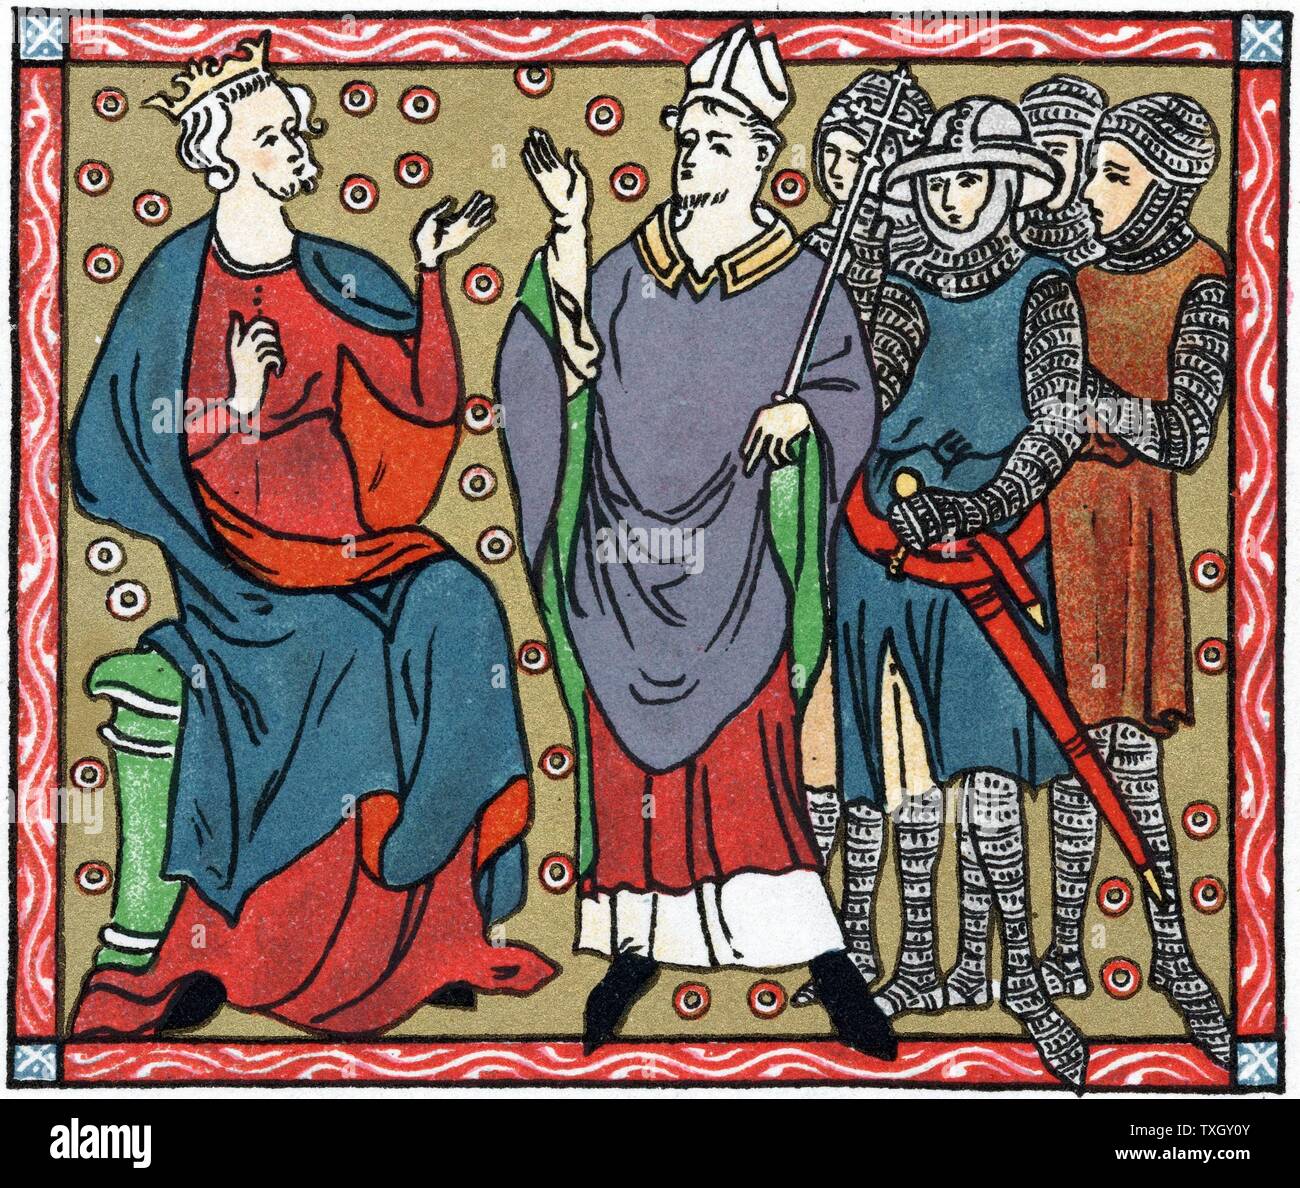 Henry II (1133-89), roi d'Angleterre à partir de 1154 : Henry conteste avec un Thomas Becket (1118-70) l'archevêque de Canterbury. Les chiffres sont envoyés par quatre chevaliers qui ont assassiné Becket. Chromolithographie après manuscrit médiéval Banque D'Images